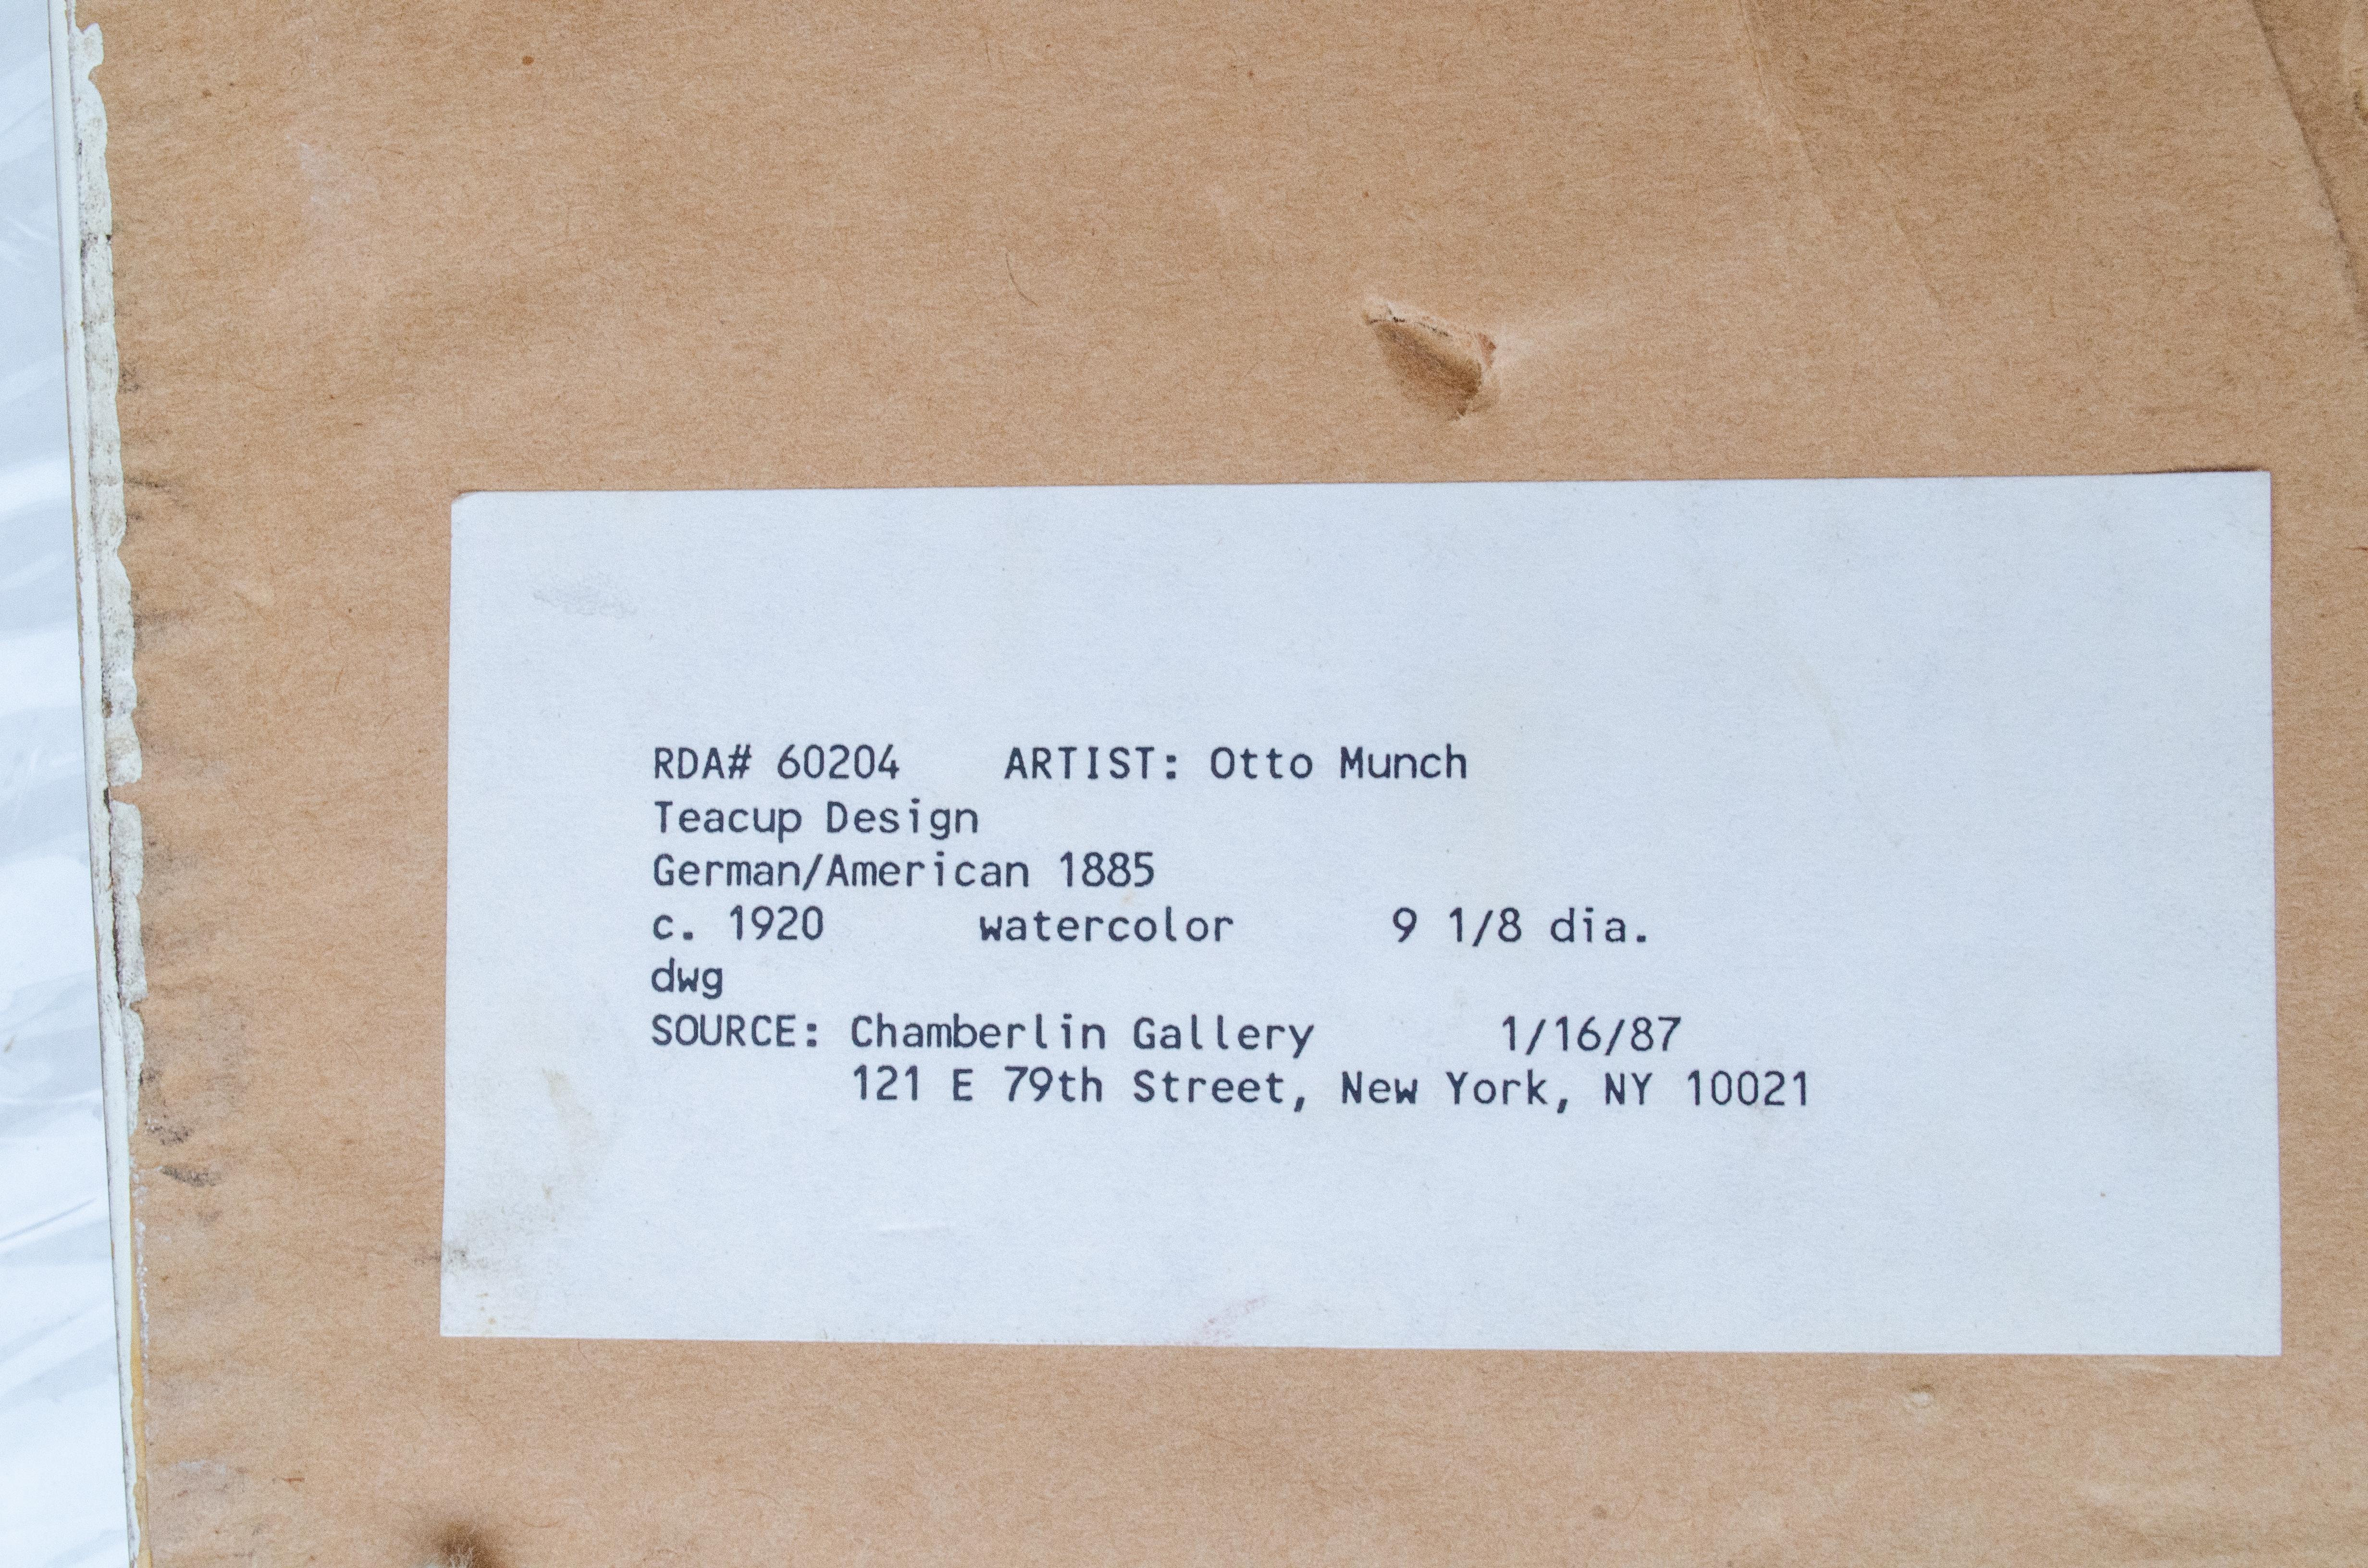 Otto Münch (germano-américain, 1885-1965)
Design/One pour des tasses à thé, c.C. 1920
Aquarelle sur papier
9 1/8 pouces de diamètre
Cadre : 16 7/8 x 16 7/8 x 1 in.

Provenance : 
Chamberlin Gallery, New York

Otto Münch (1885-1965) était un artiste